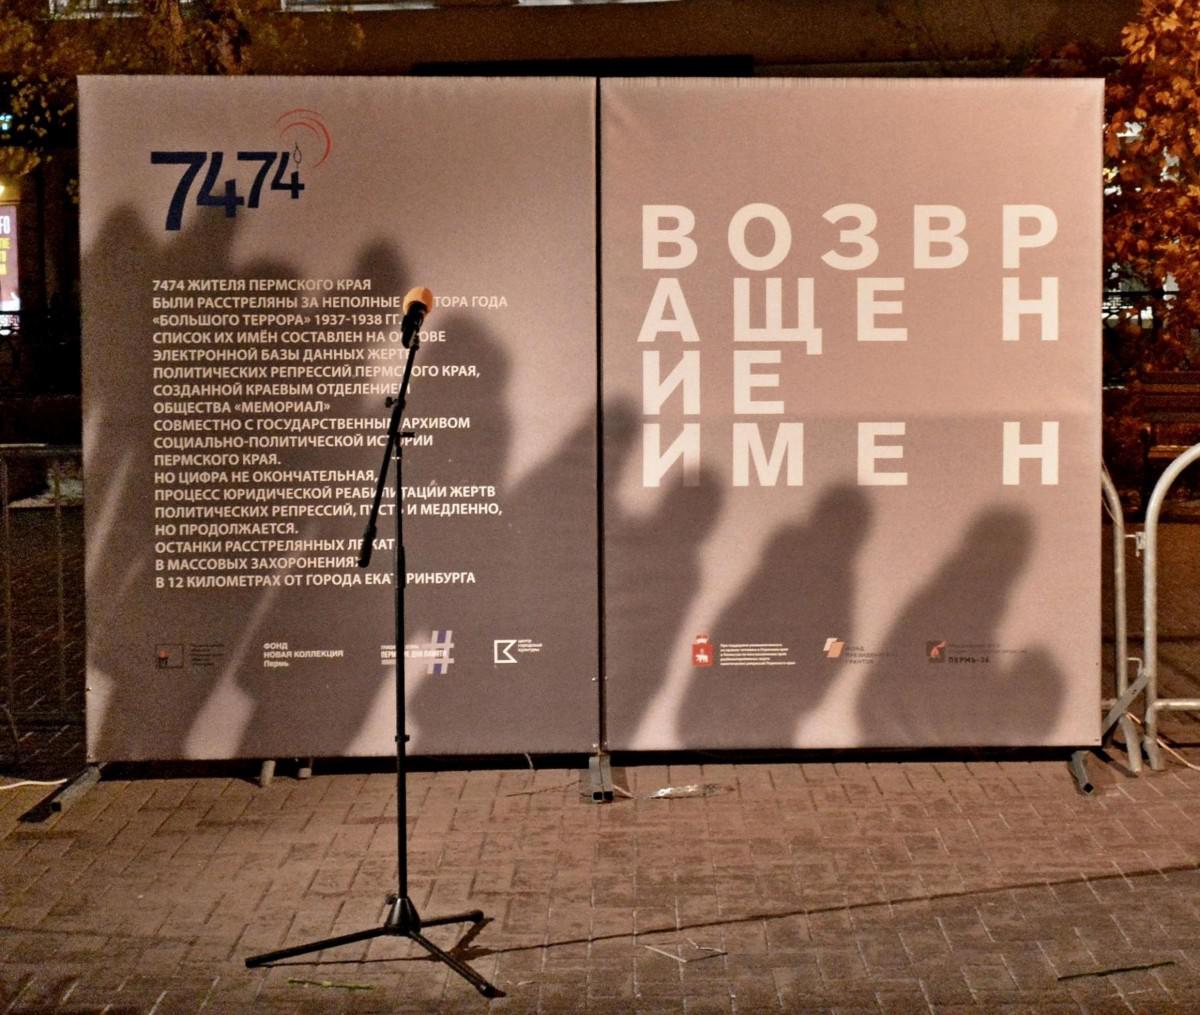 Сегодня в России проходит акция "Возвращение имен", посвященная Дню памяти жертв политических репрессий.